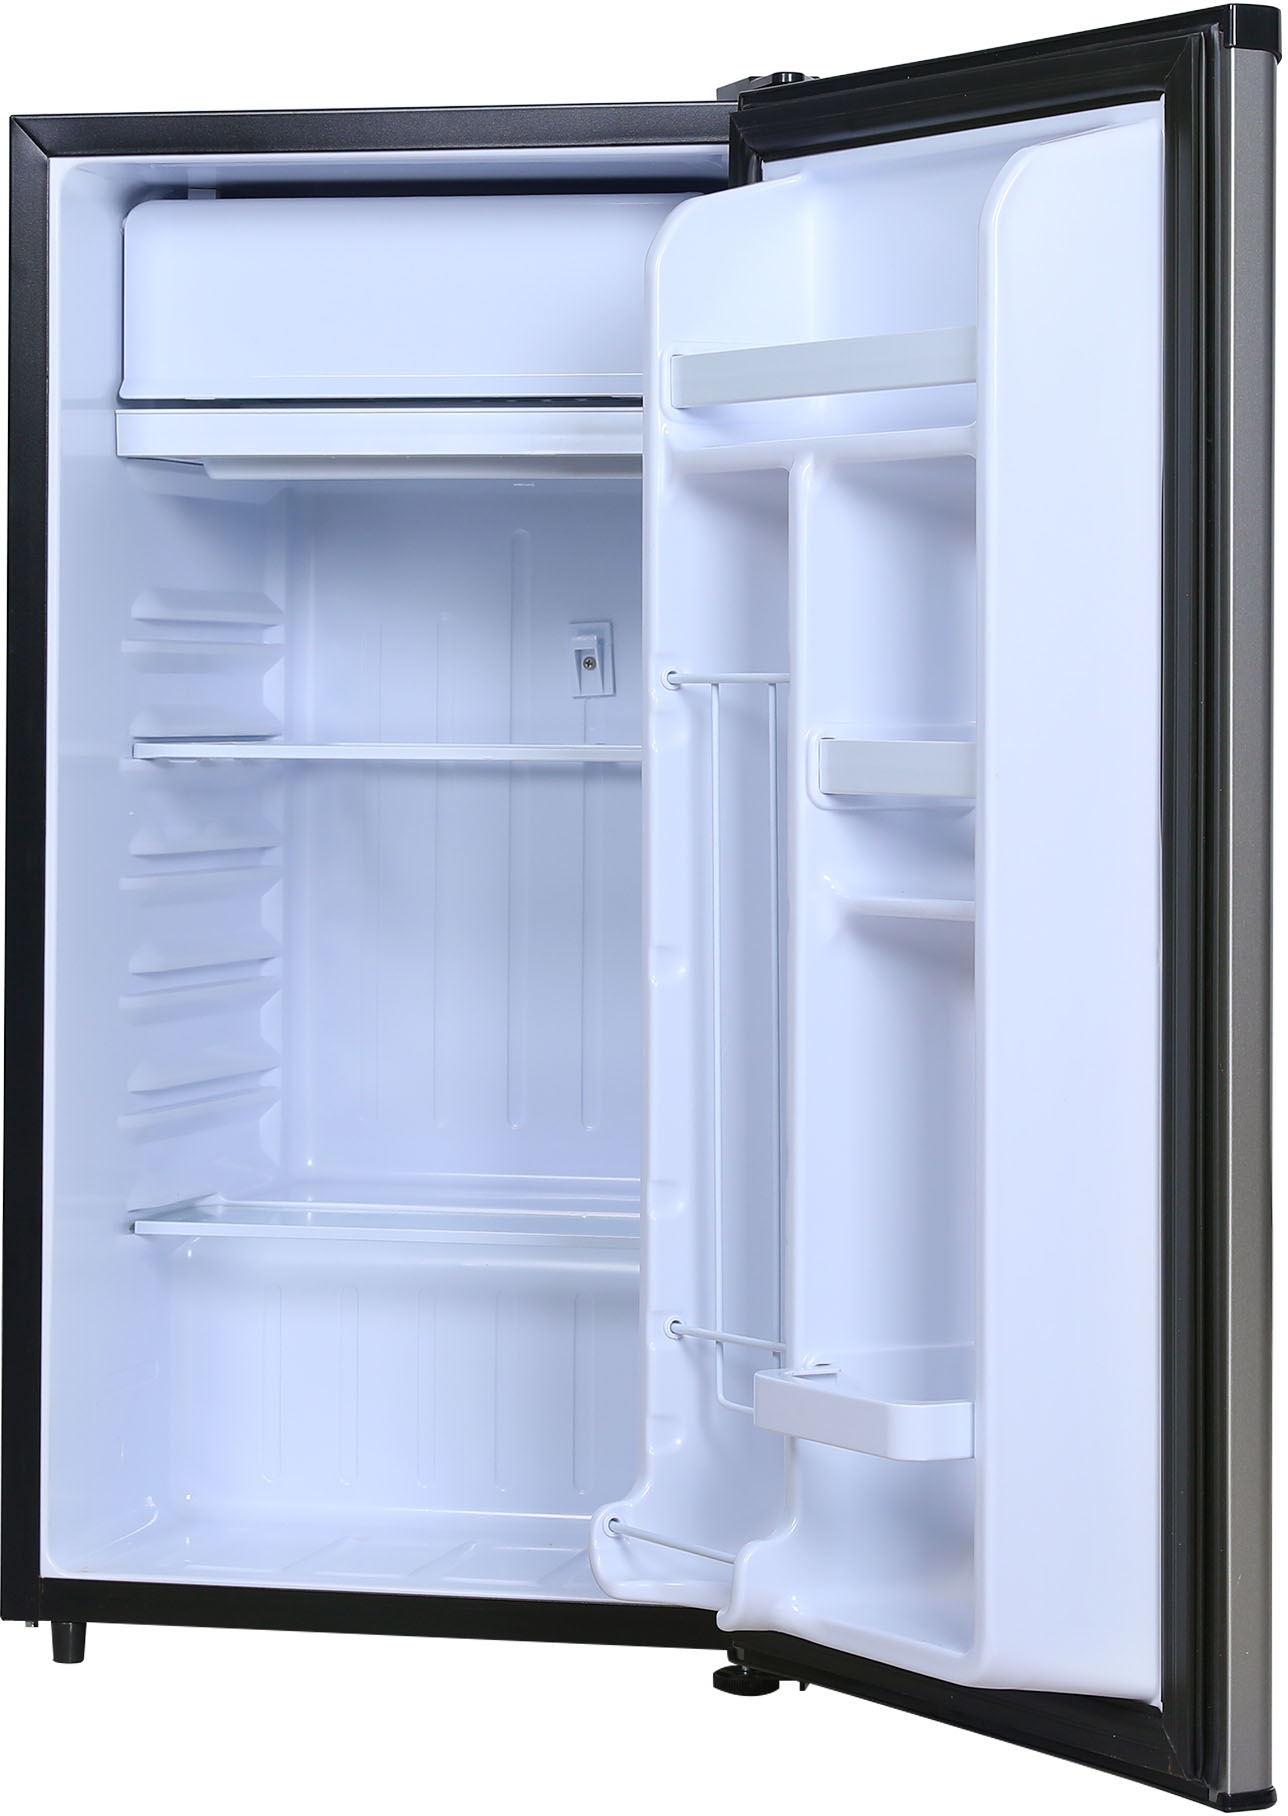 Left View: Frigidaire 3.2 Cu. ft. Compact Refrigerator Chrome Trim EFR323, Platinum